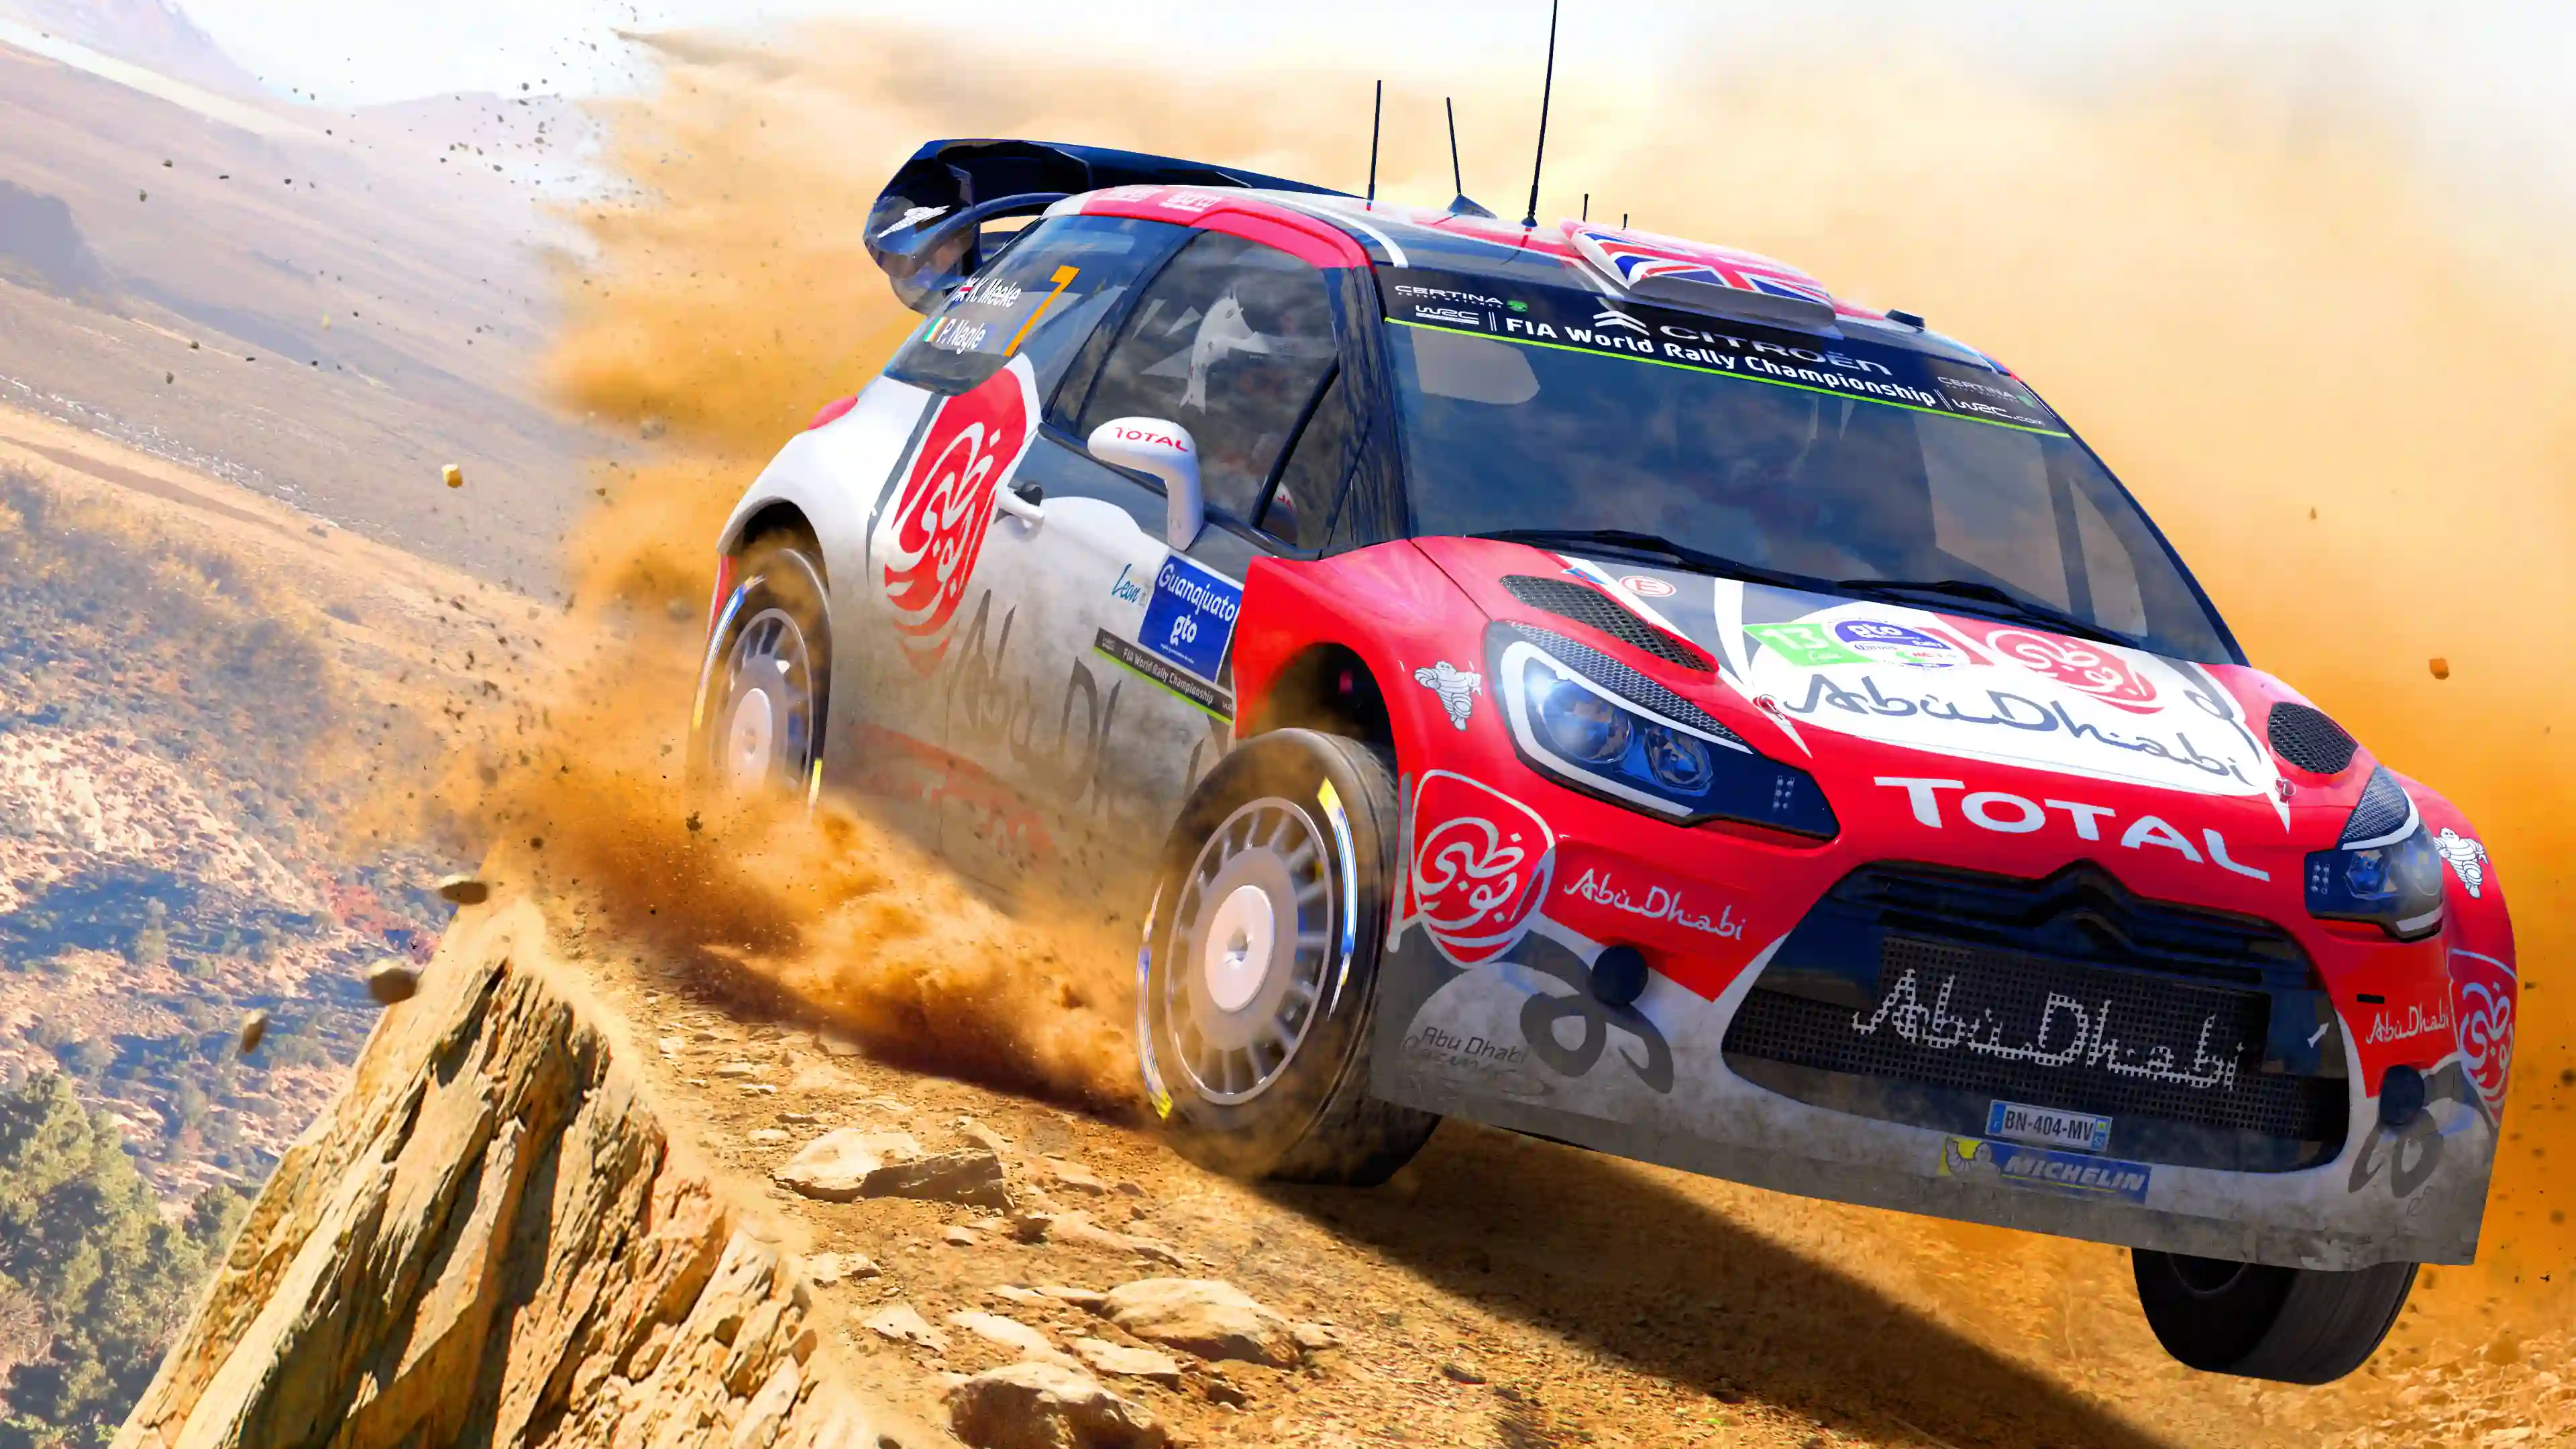  اکانت قانونی WRC 6 FIA World Rally Championship برای PS4 & PS5 